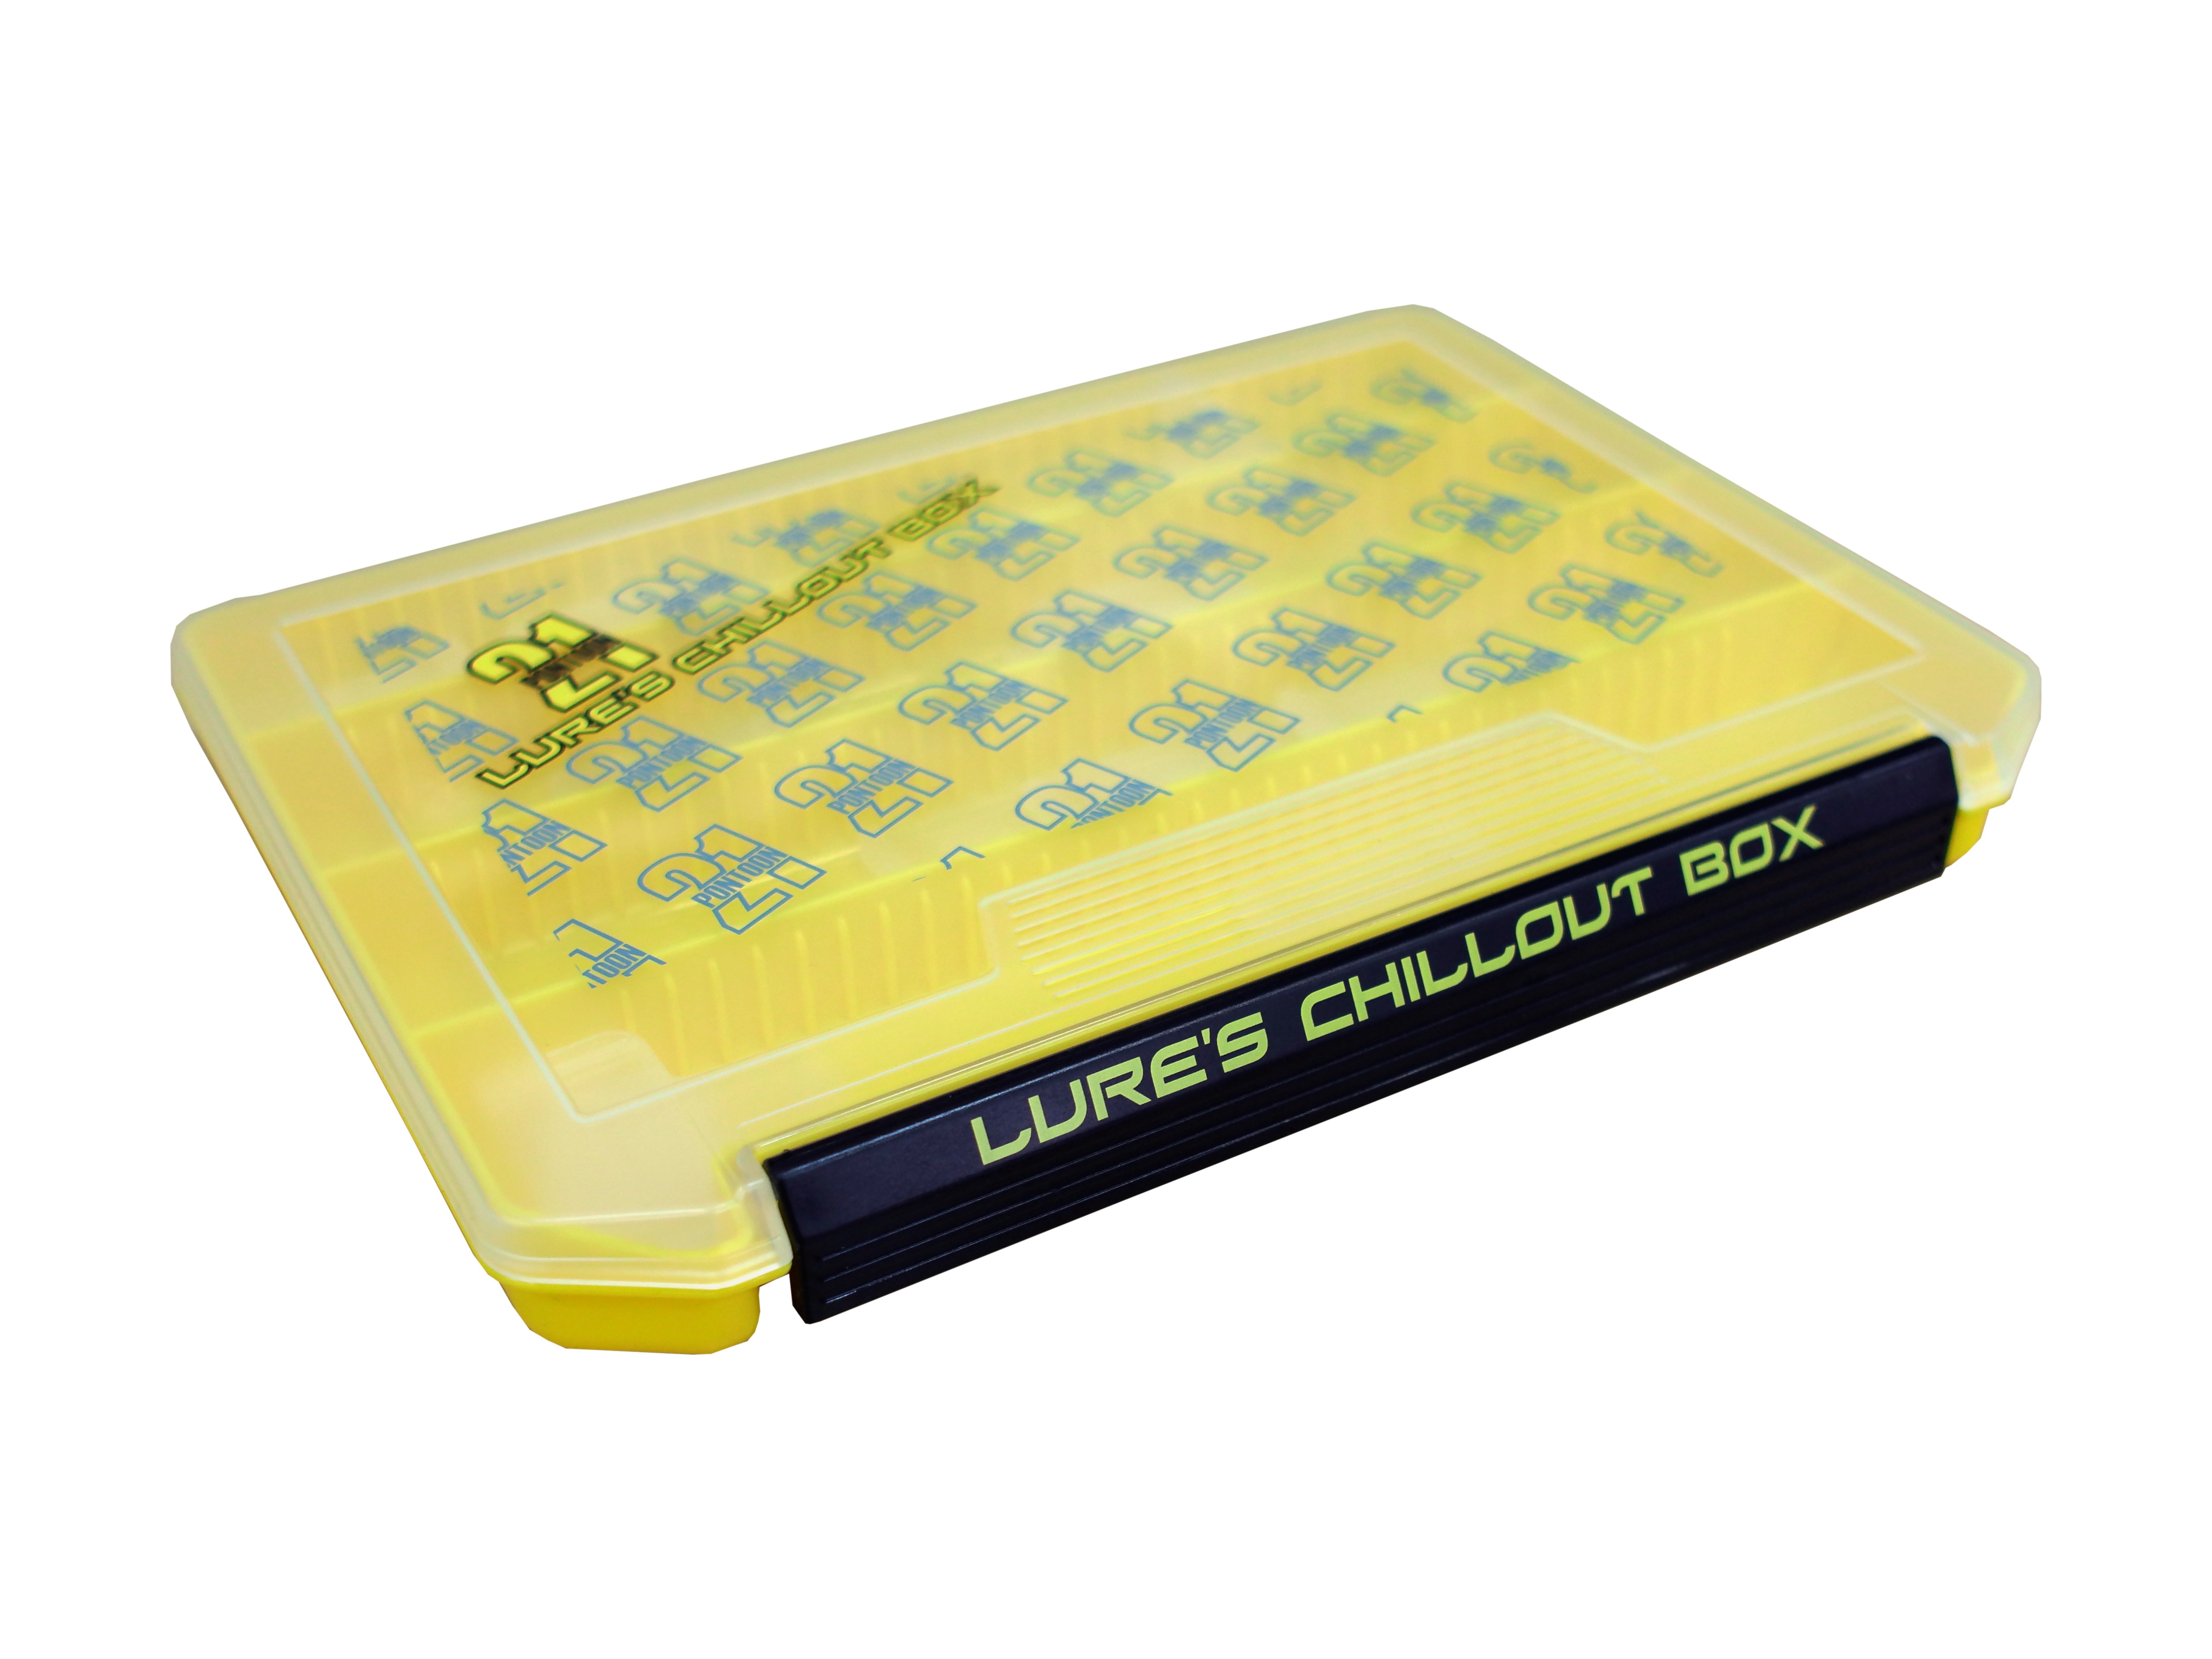 Коробка для приманок Pontoon 21 Lures Chillout Box VS-3010ND-P21-Y. Широкий  ассортимент, доступные цены!